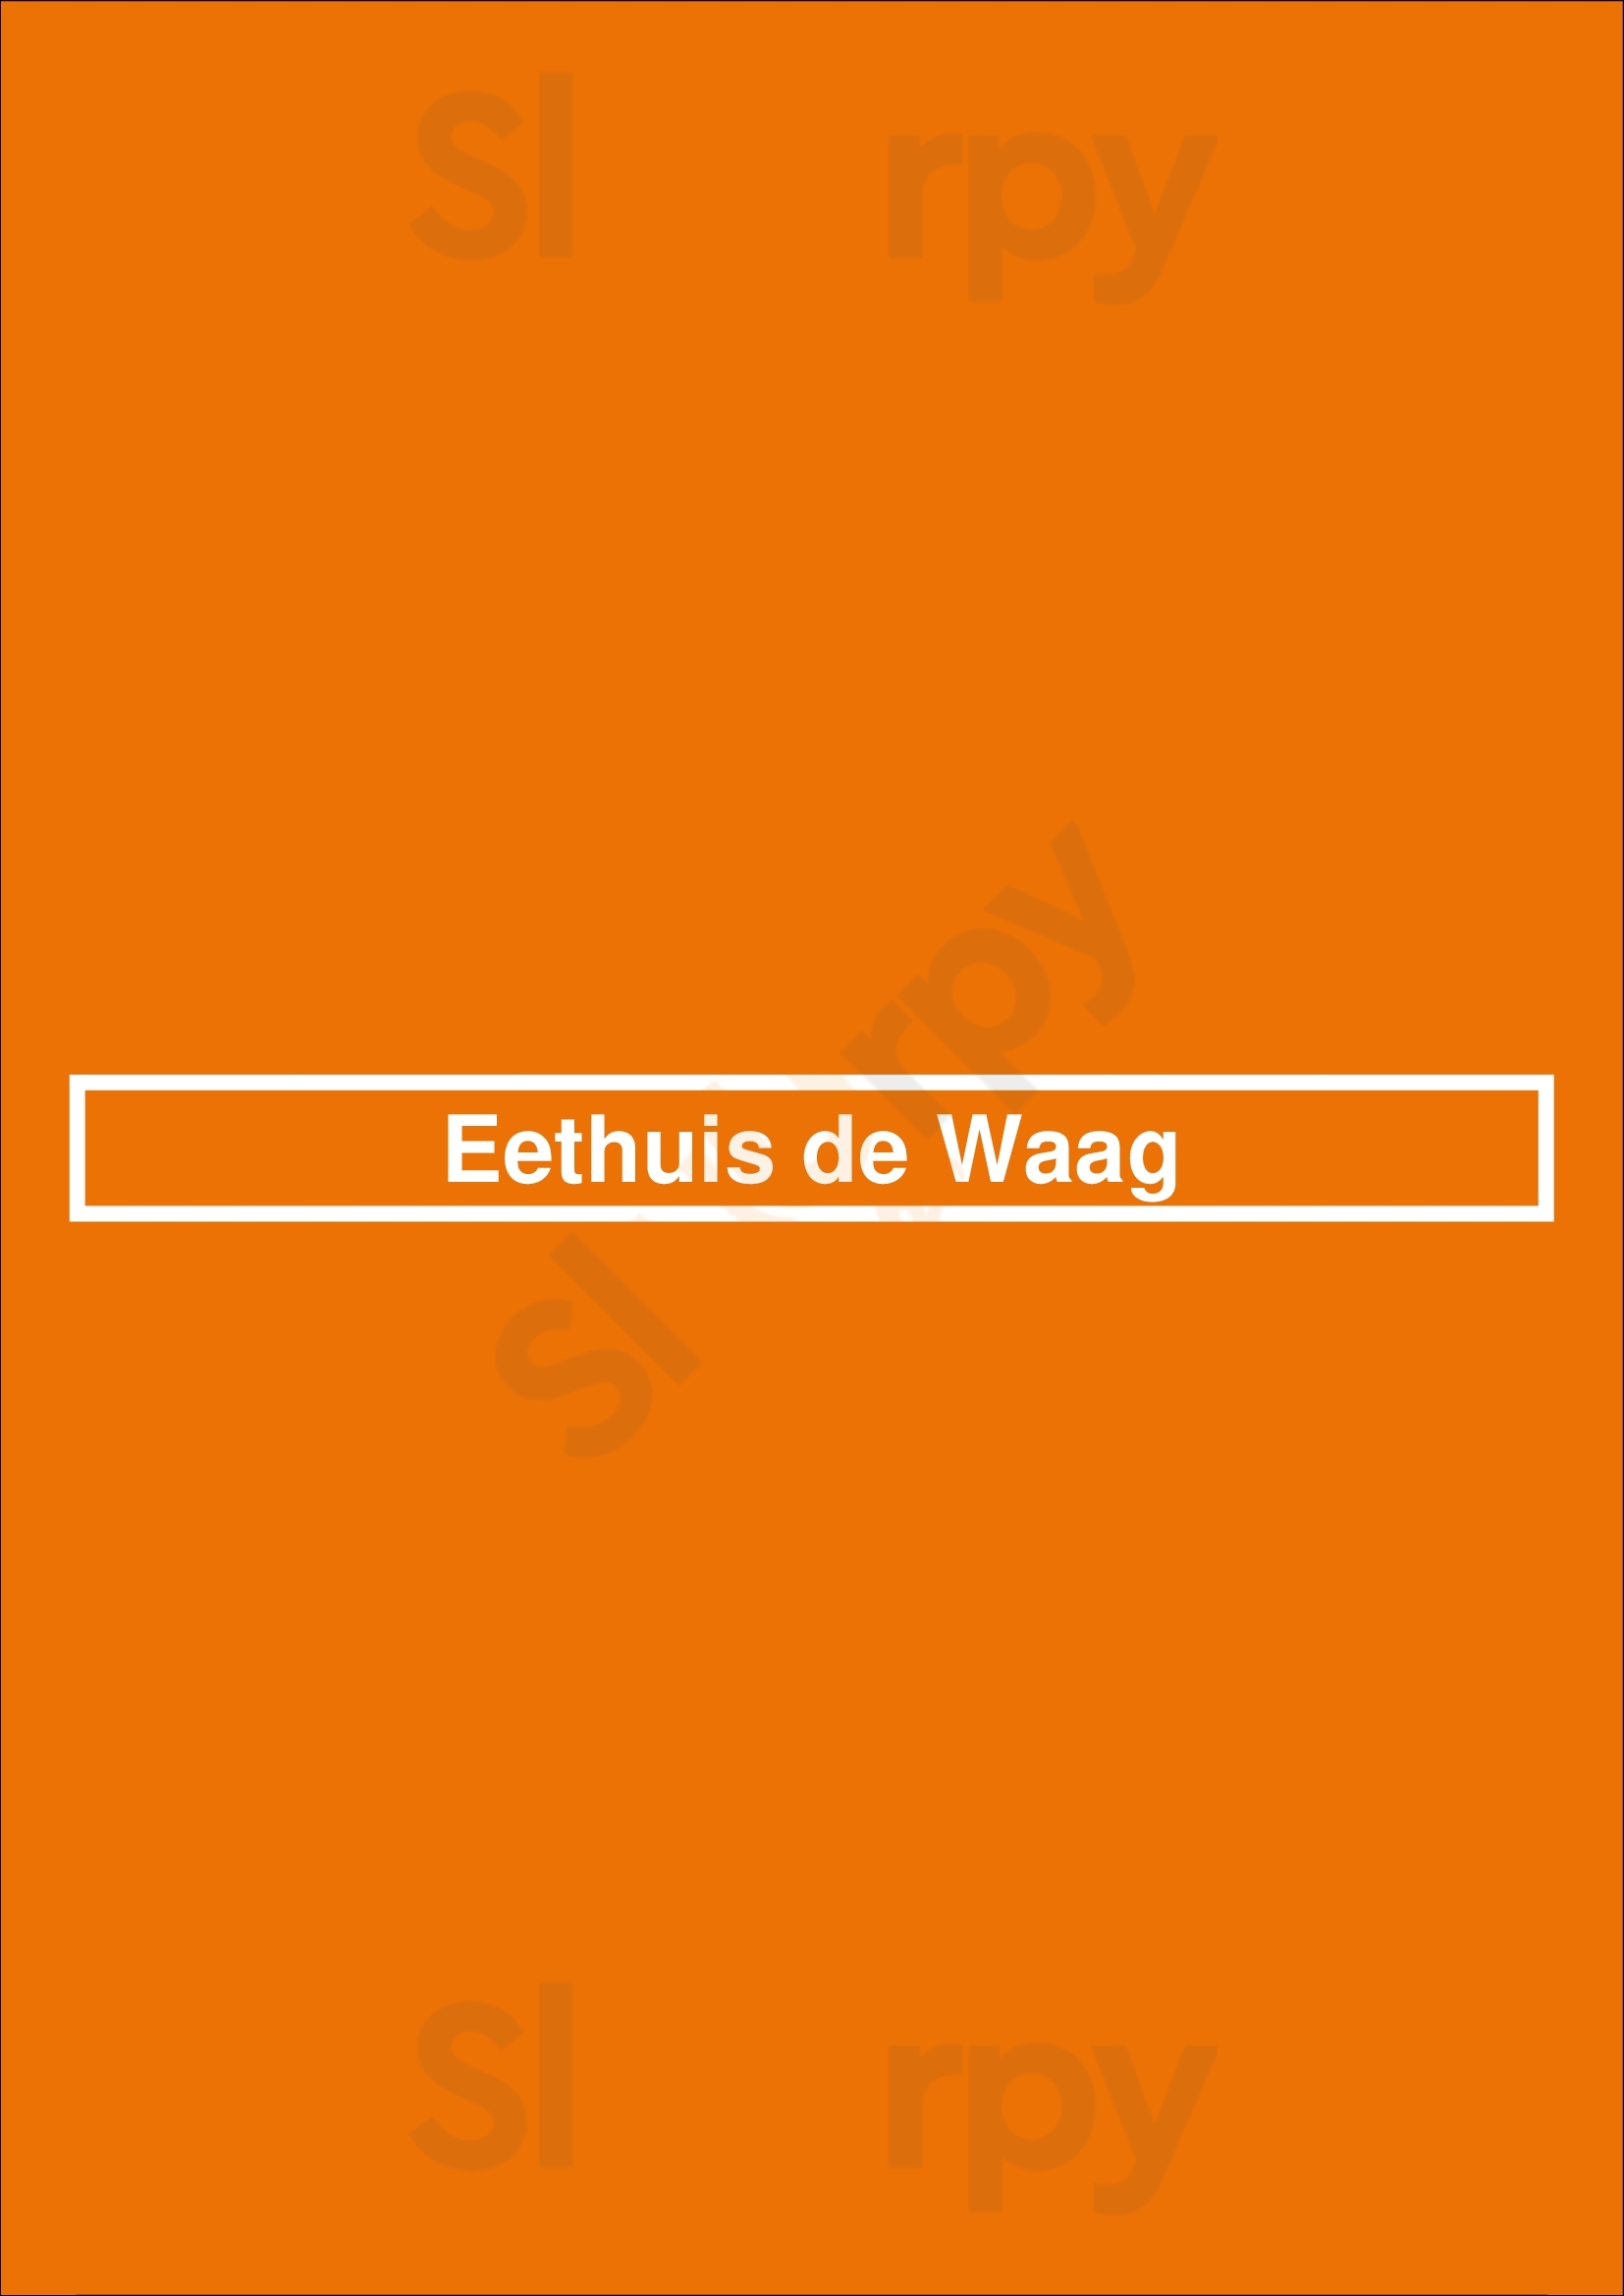 Eethuis De Waag Schoonhoven Menu - 1